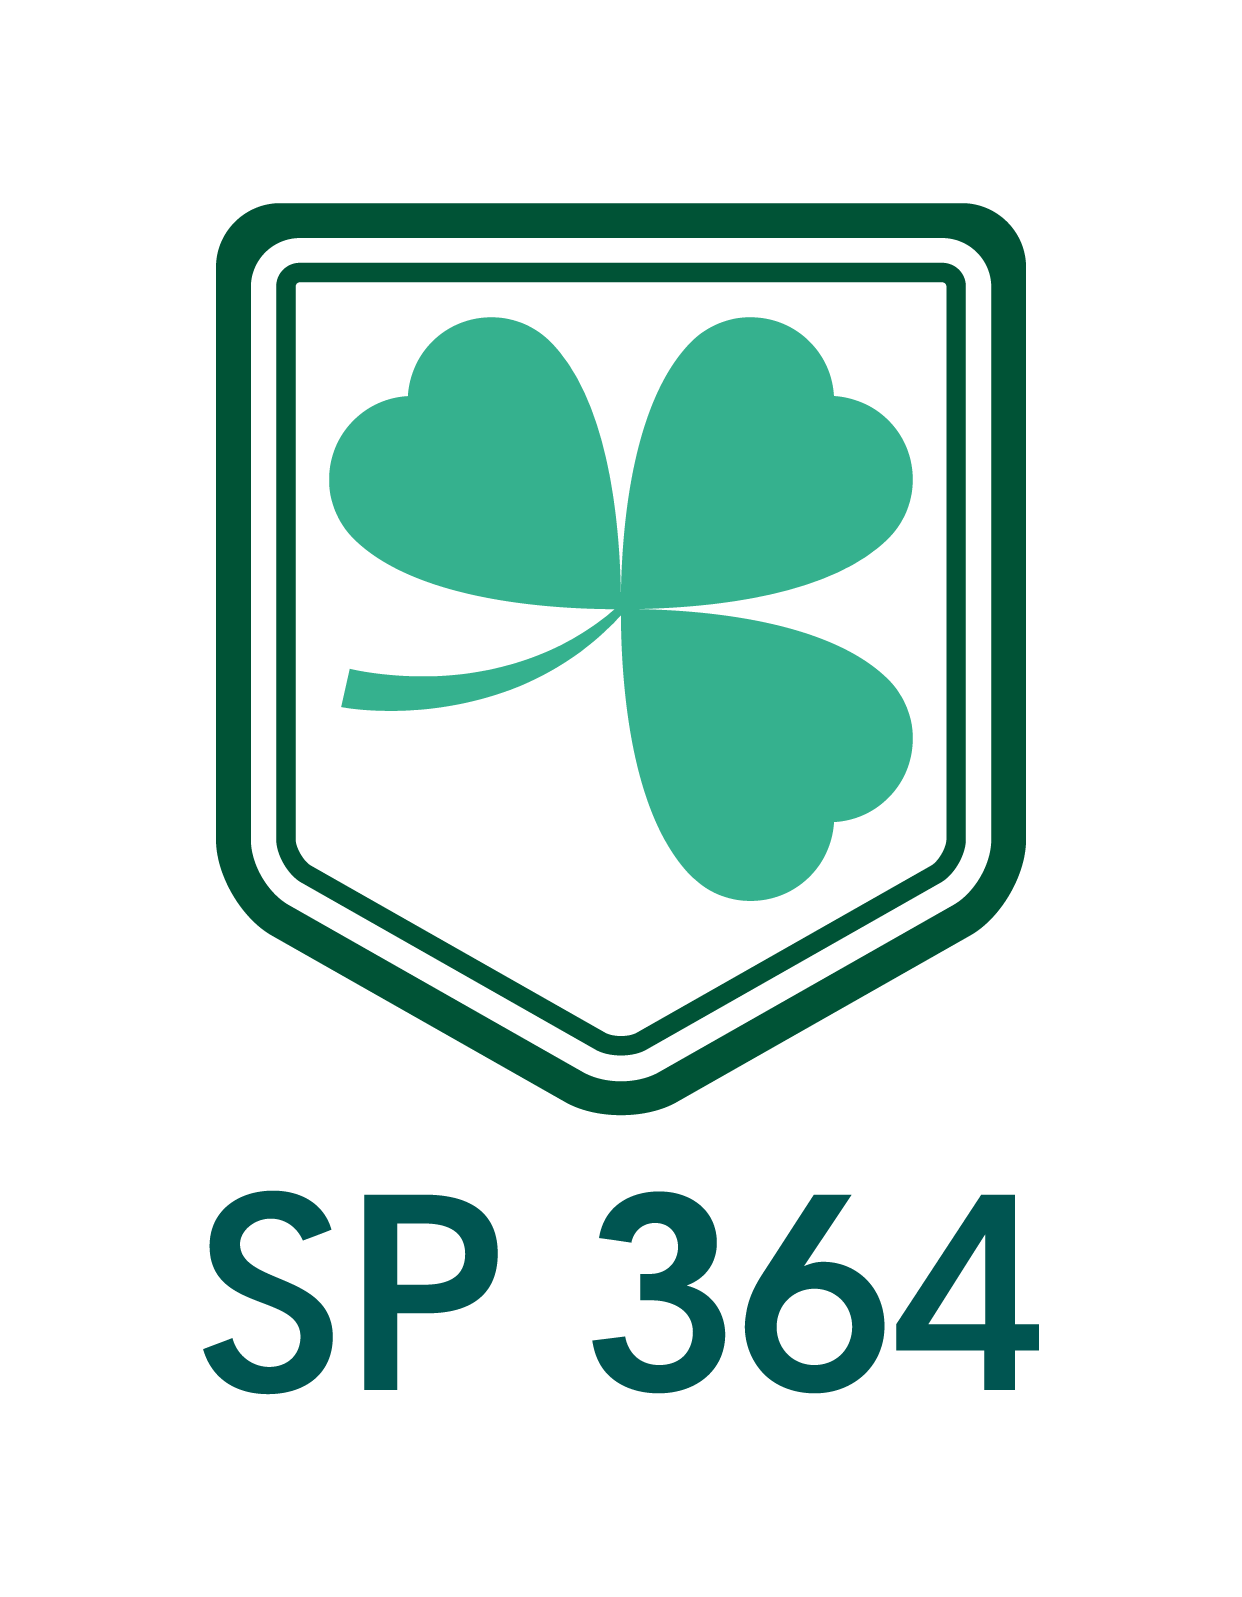 Logo szkoły podstawowej. Przedstawia trójlistną koniczynę umieszczoną na środku zielonego herbu. Pod spodem skrót nazwy szkoły - SP 364